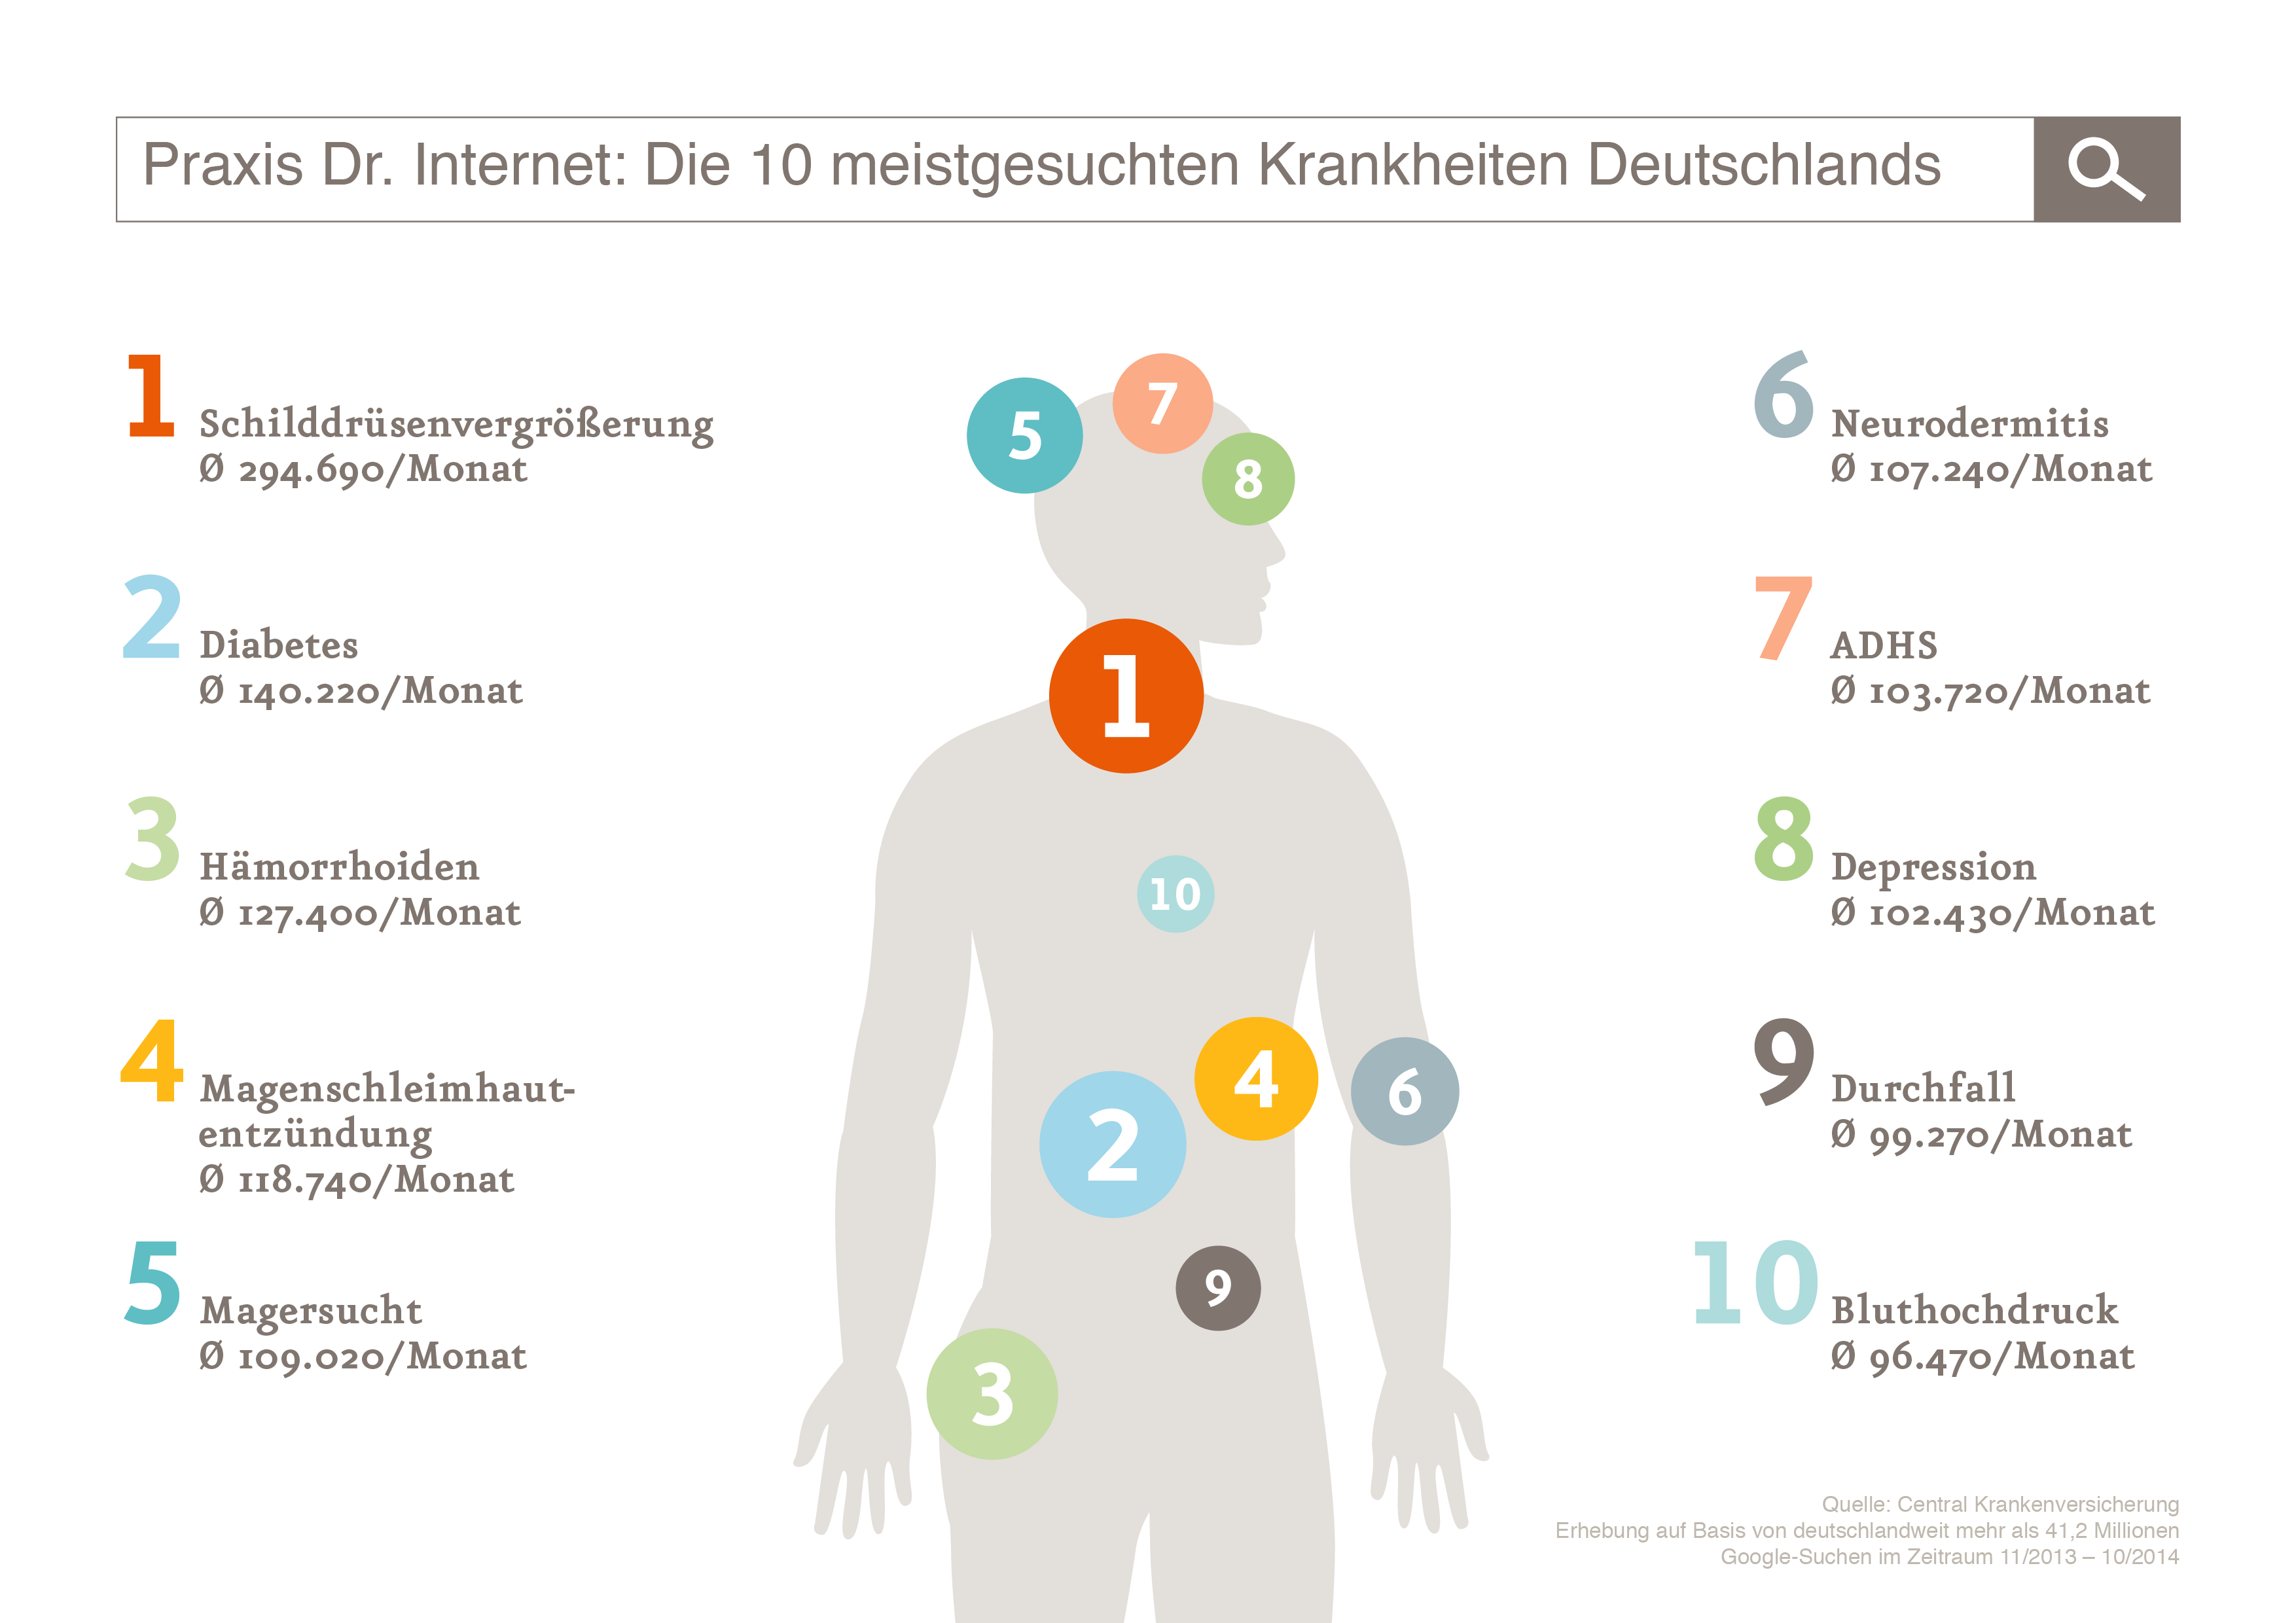 Die meistgesuchten Krankheiten im Internet | Quelle: central.de